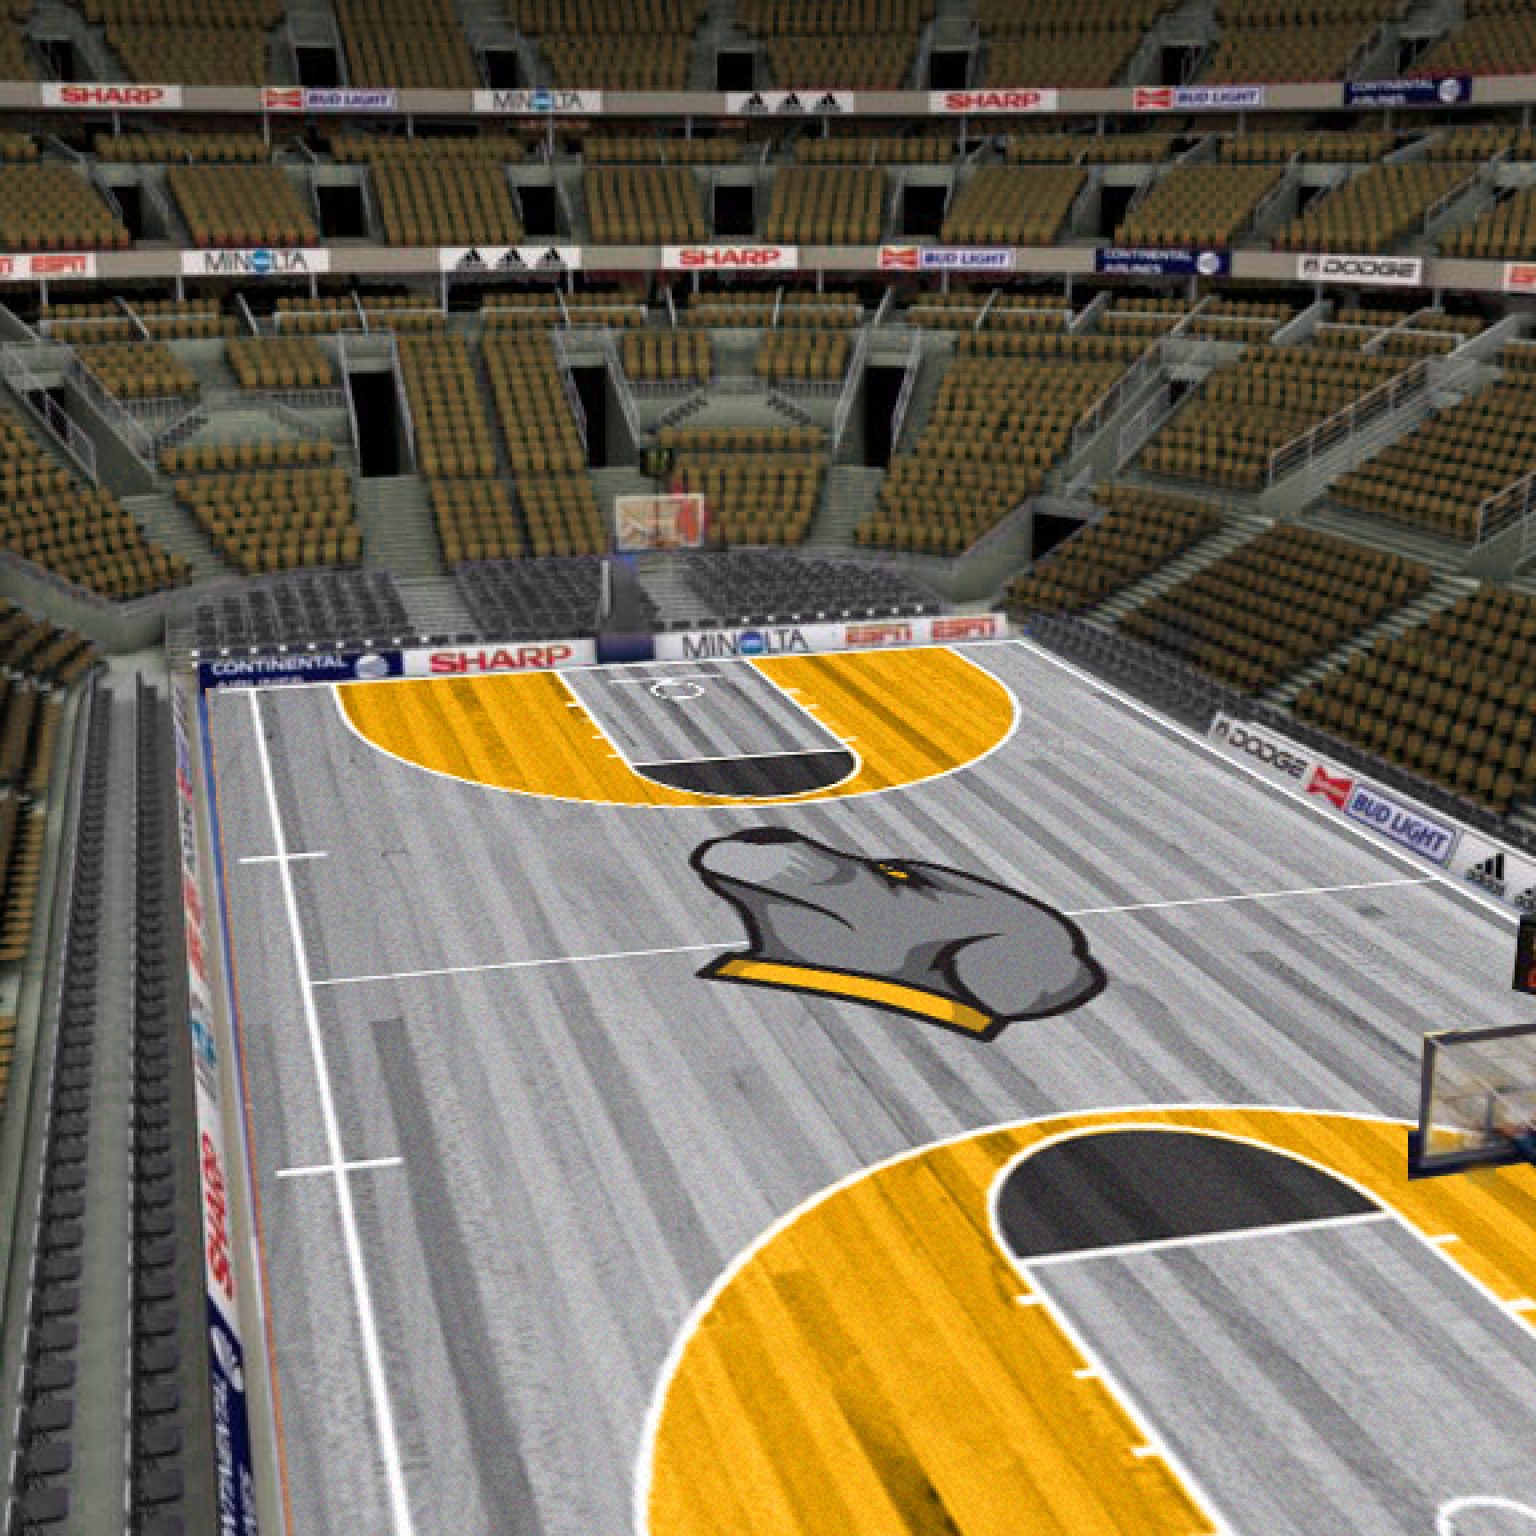 Basketball arena for Pitbulls